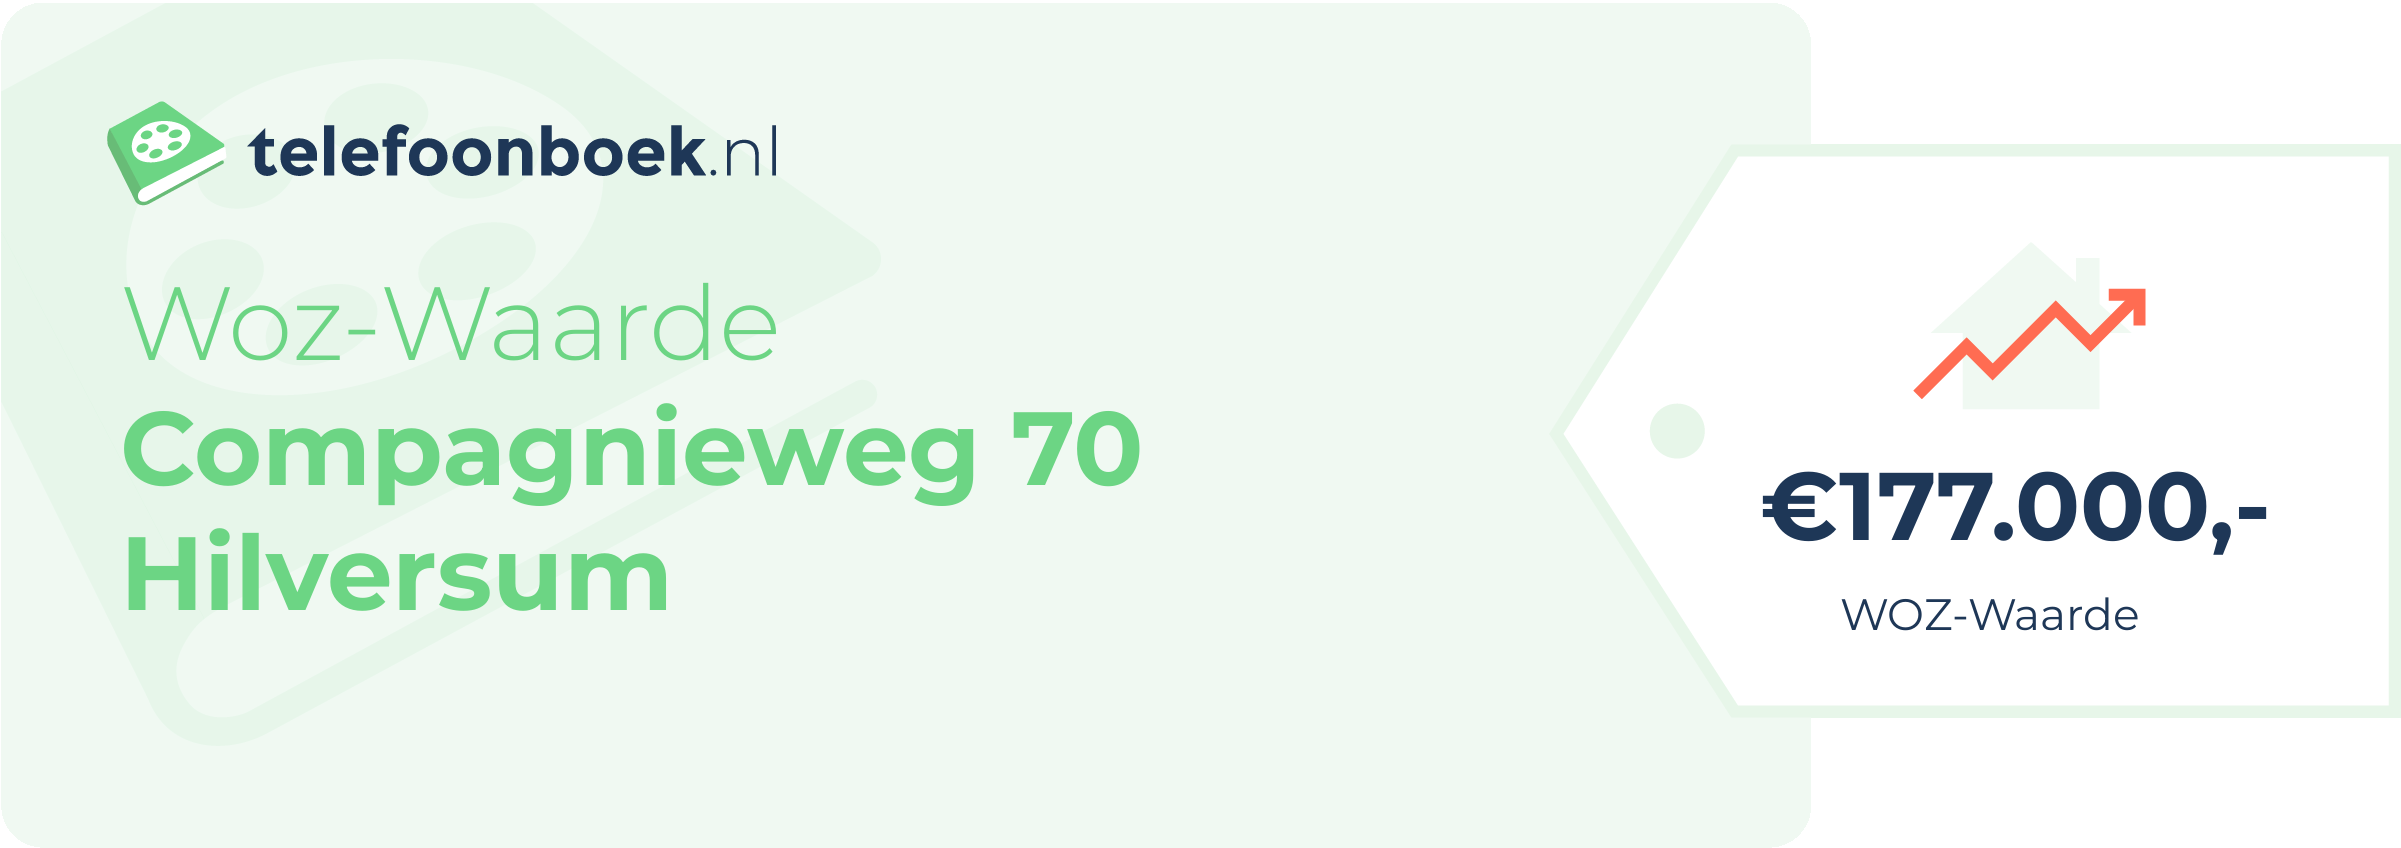 WOZ-waarde Compagnieweg 70 Hilversum